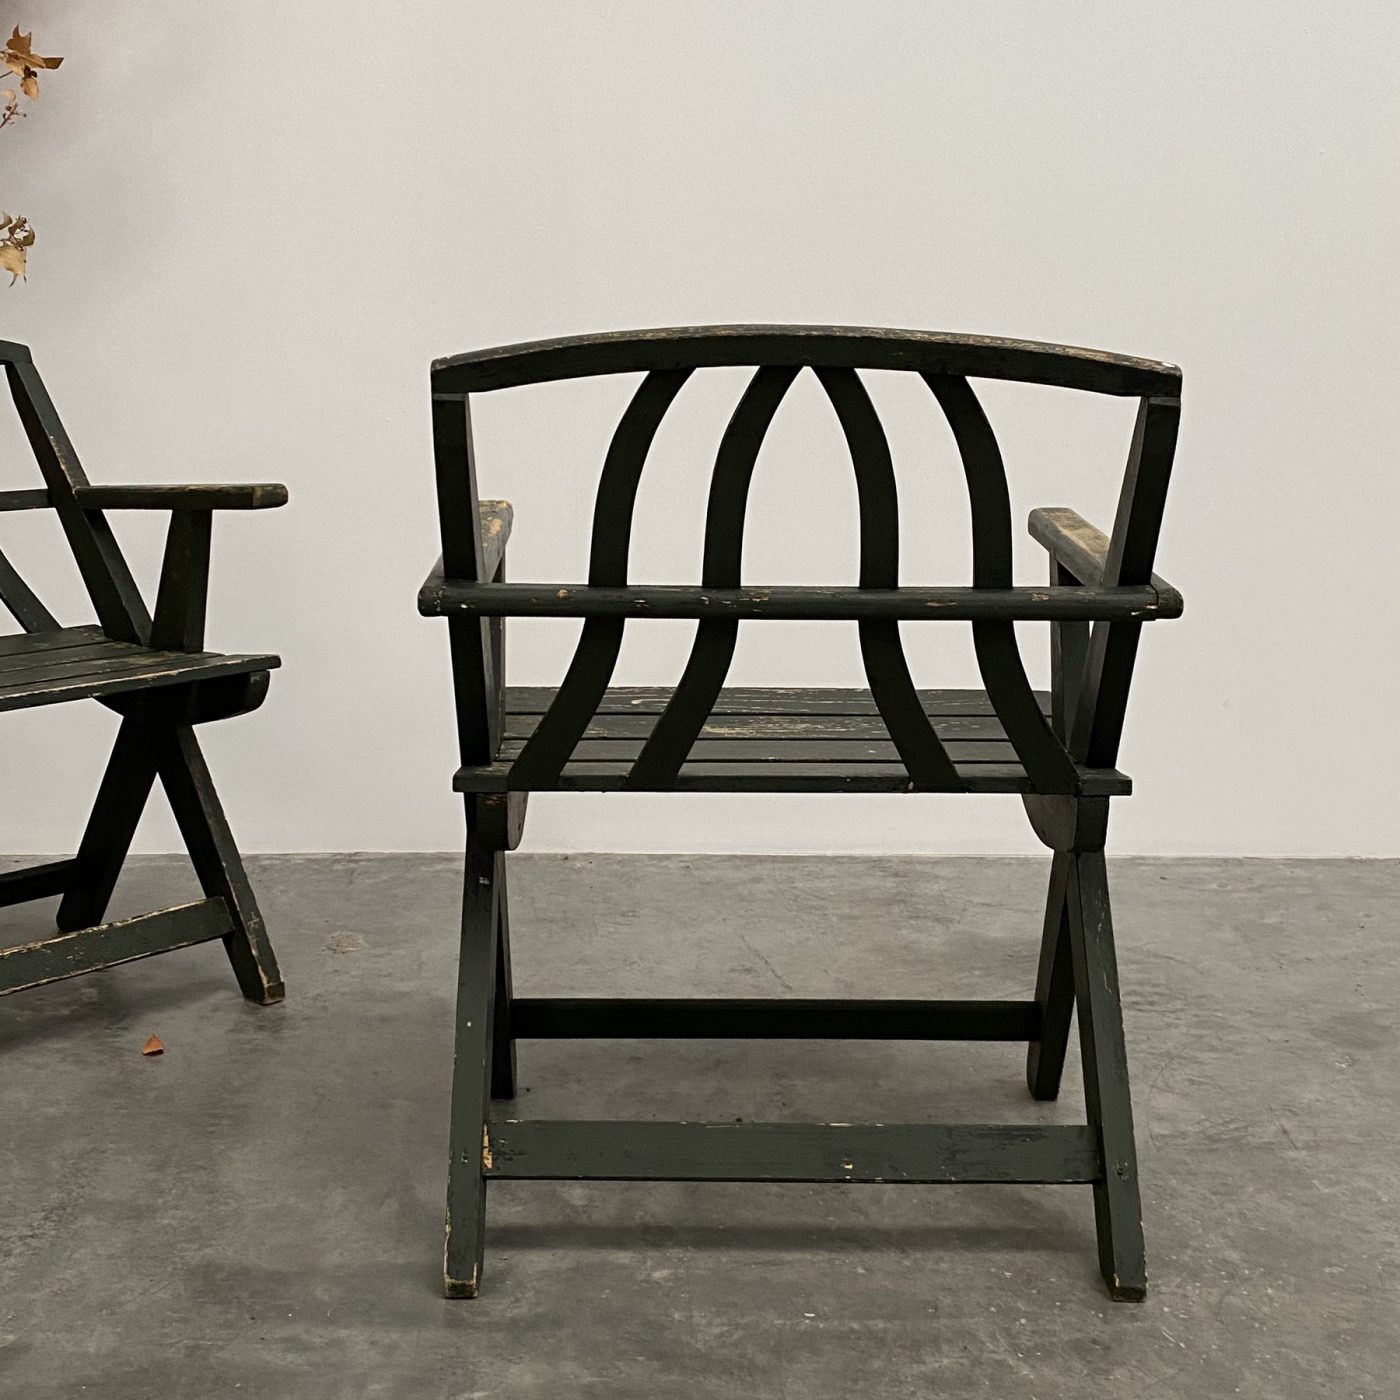 objet-vagabond-wooden-chairs0000